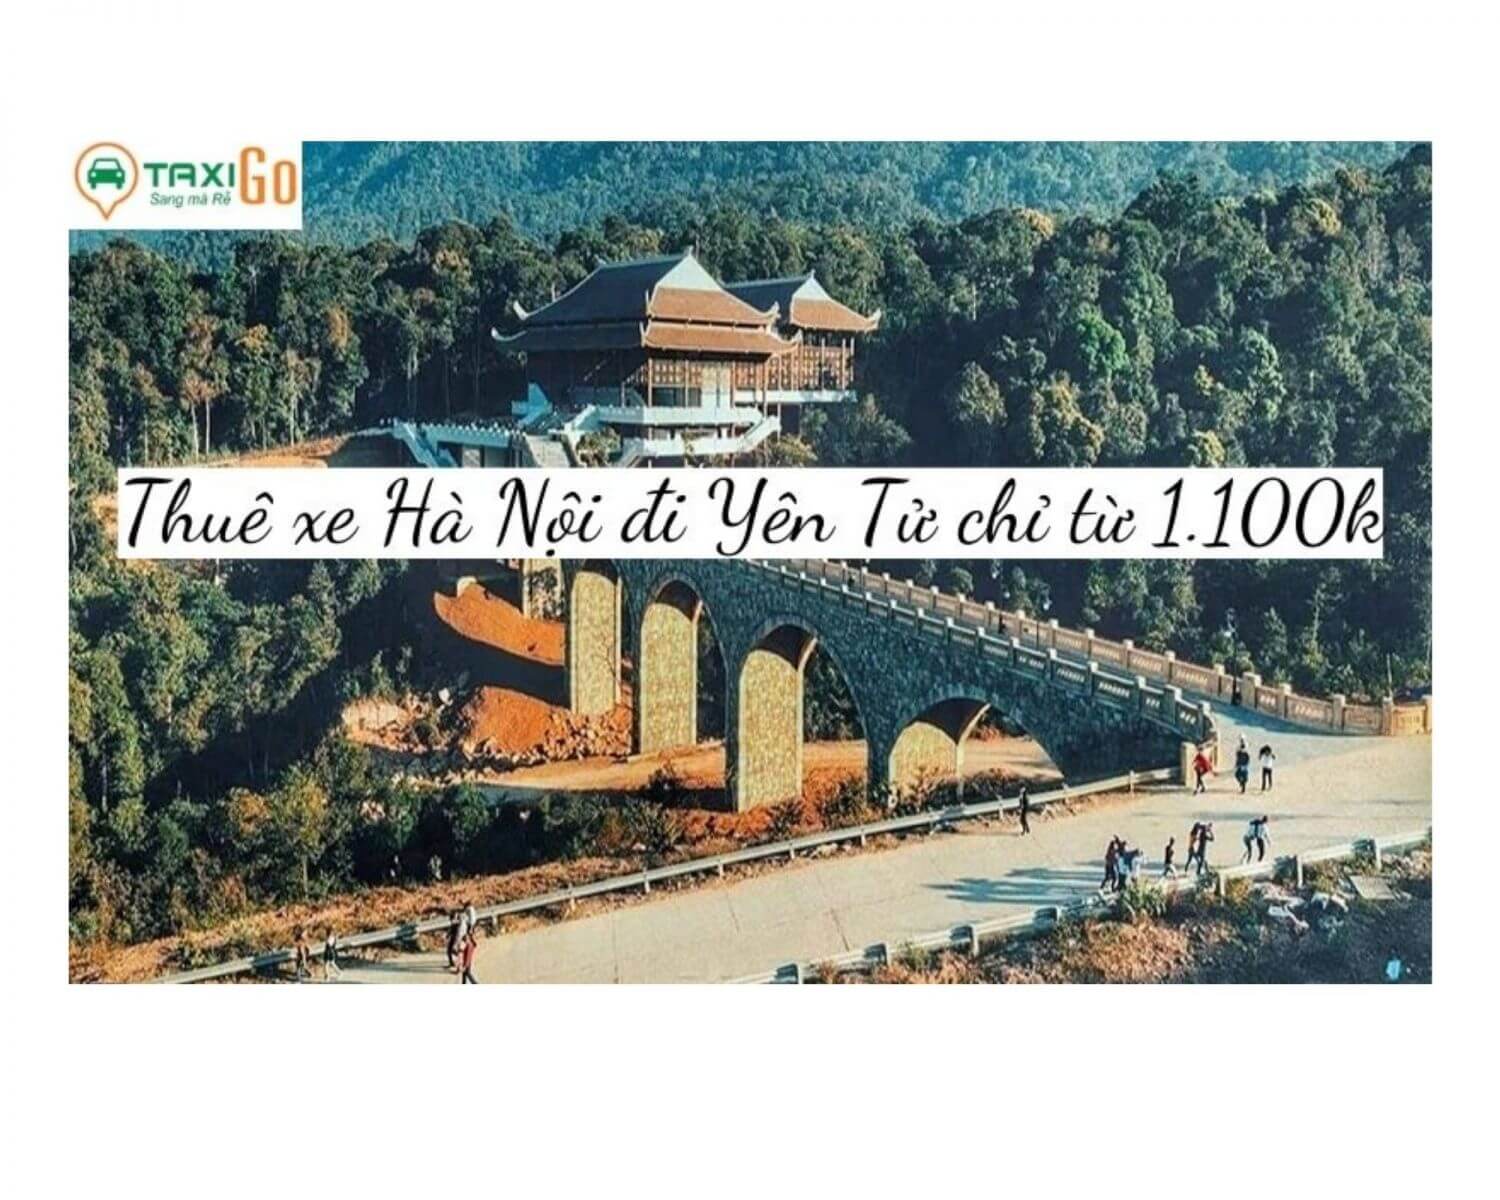 THUÊ XE riêng Hà Nội đi Yên Tử - Quảng Ninh chỉ từ 1.100k- TaxiGo.vn